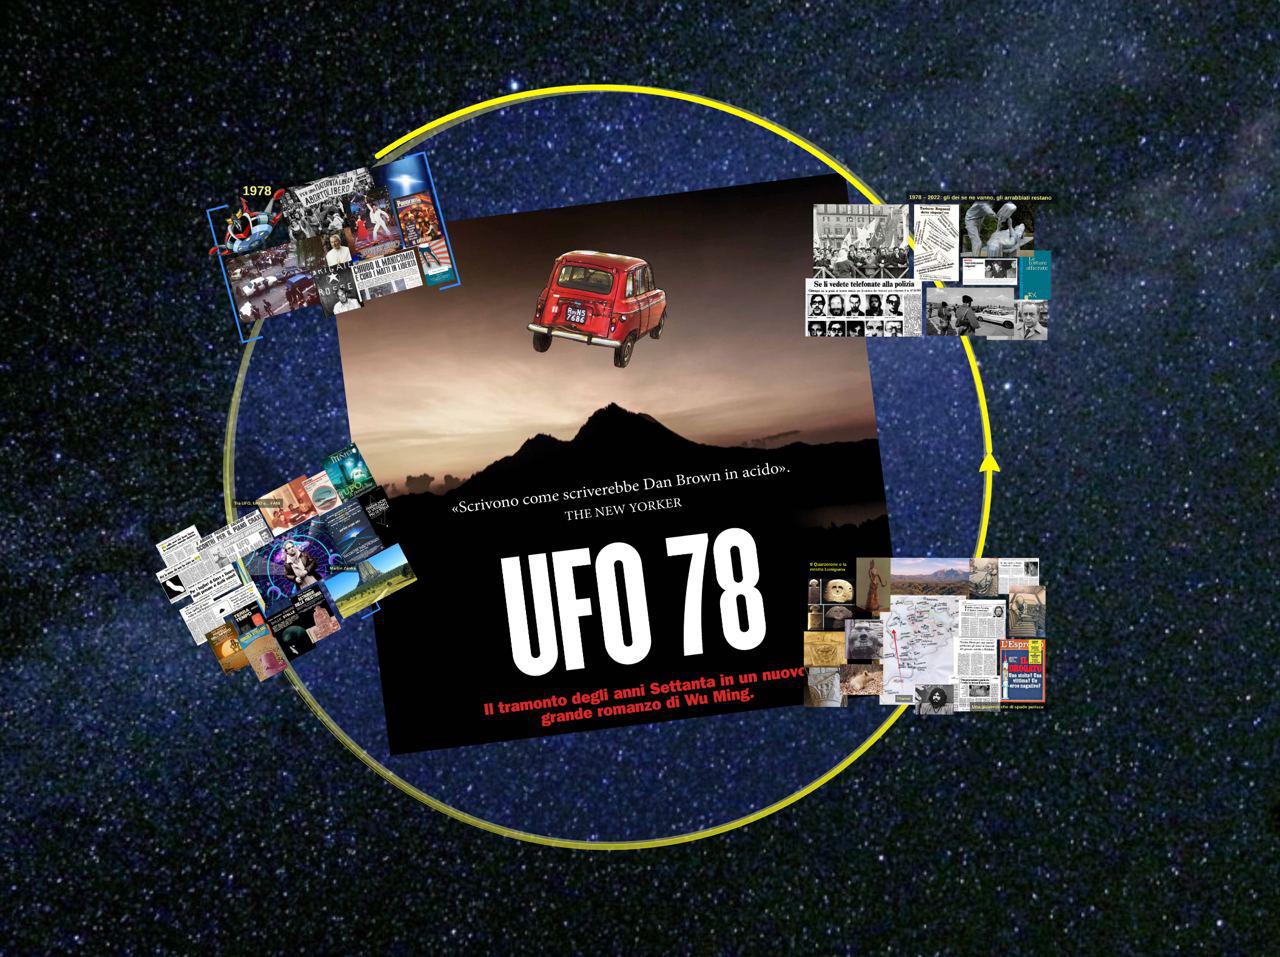 La presentazione multimediale di Ufo 78